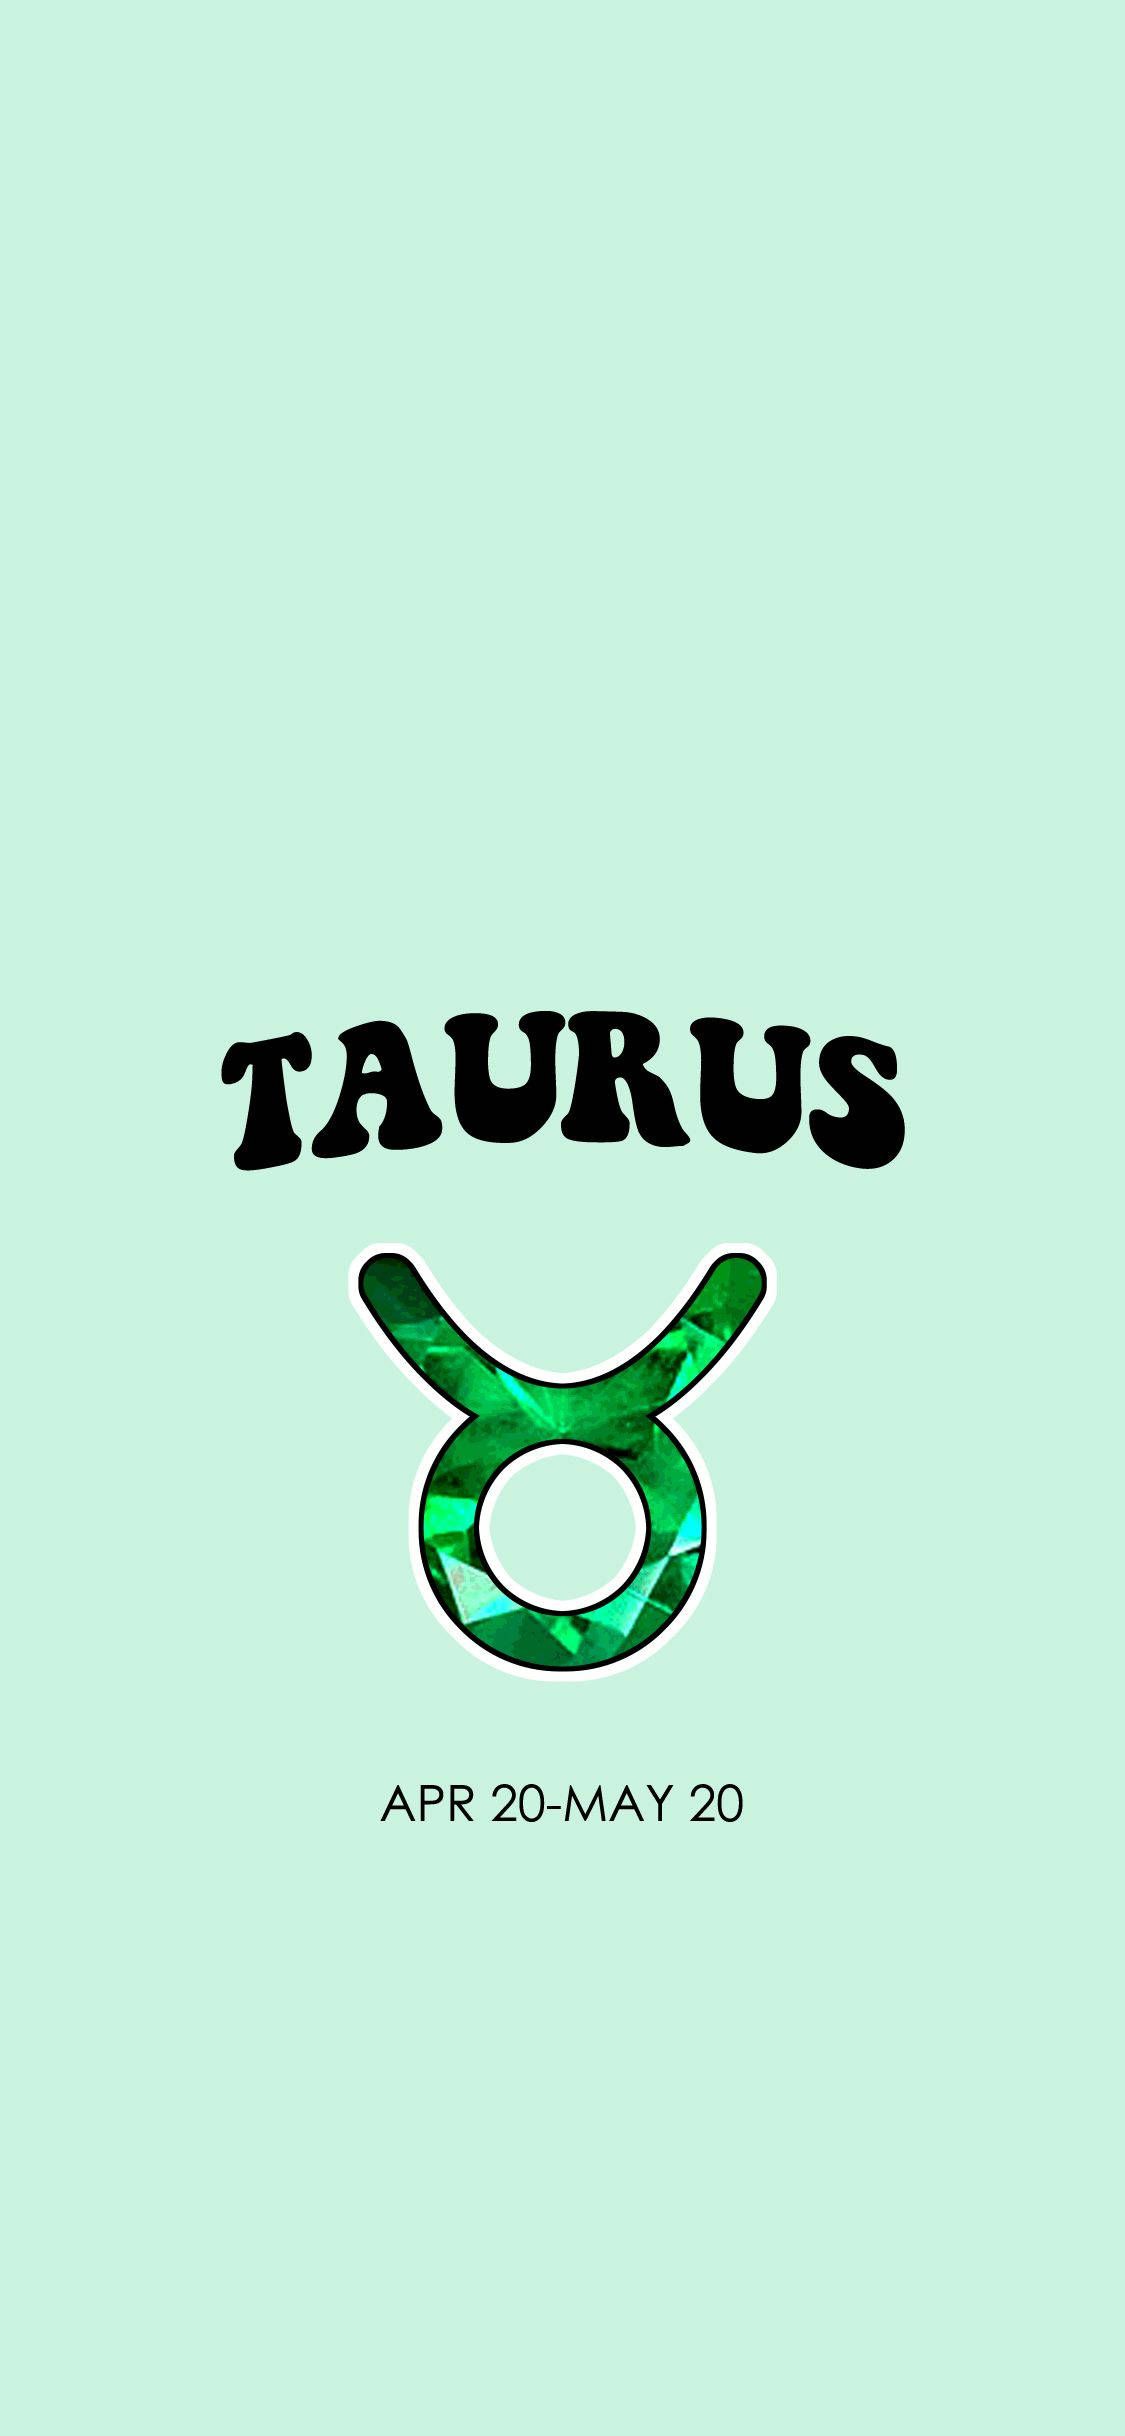 Taurus phone wallpaper for any phone! - Taurus, May